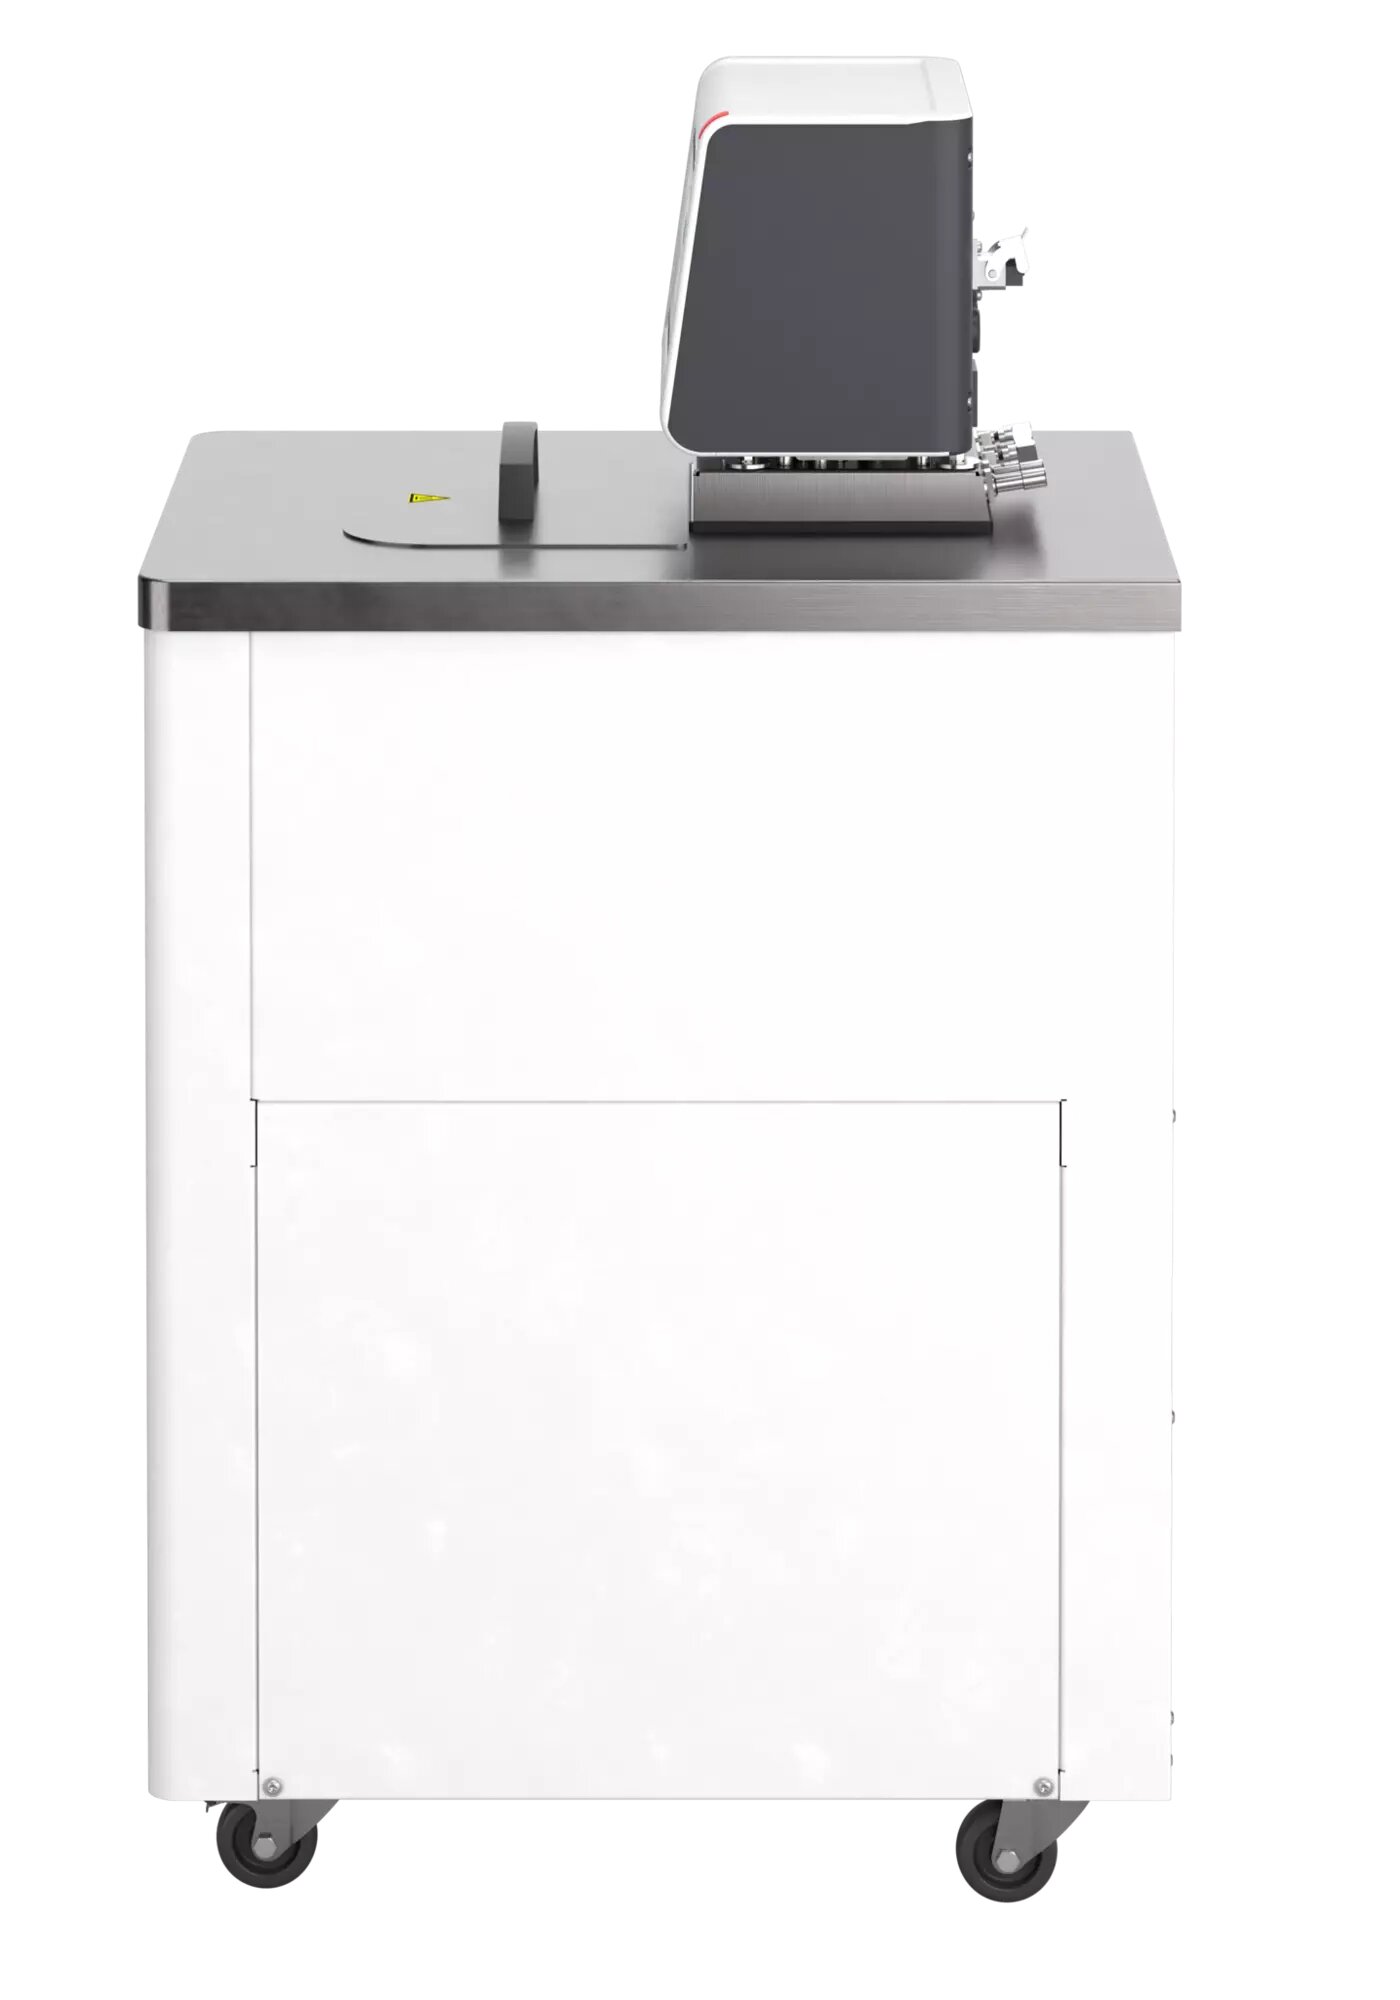 MAGIO MX-1800F keringtető hűtő-fűtő termosztát természetes hűtőközeggel